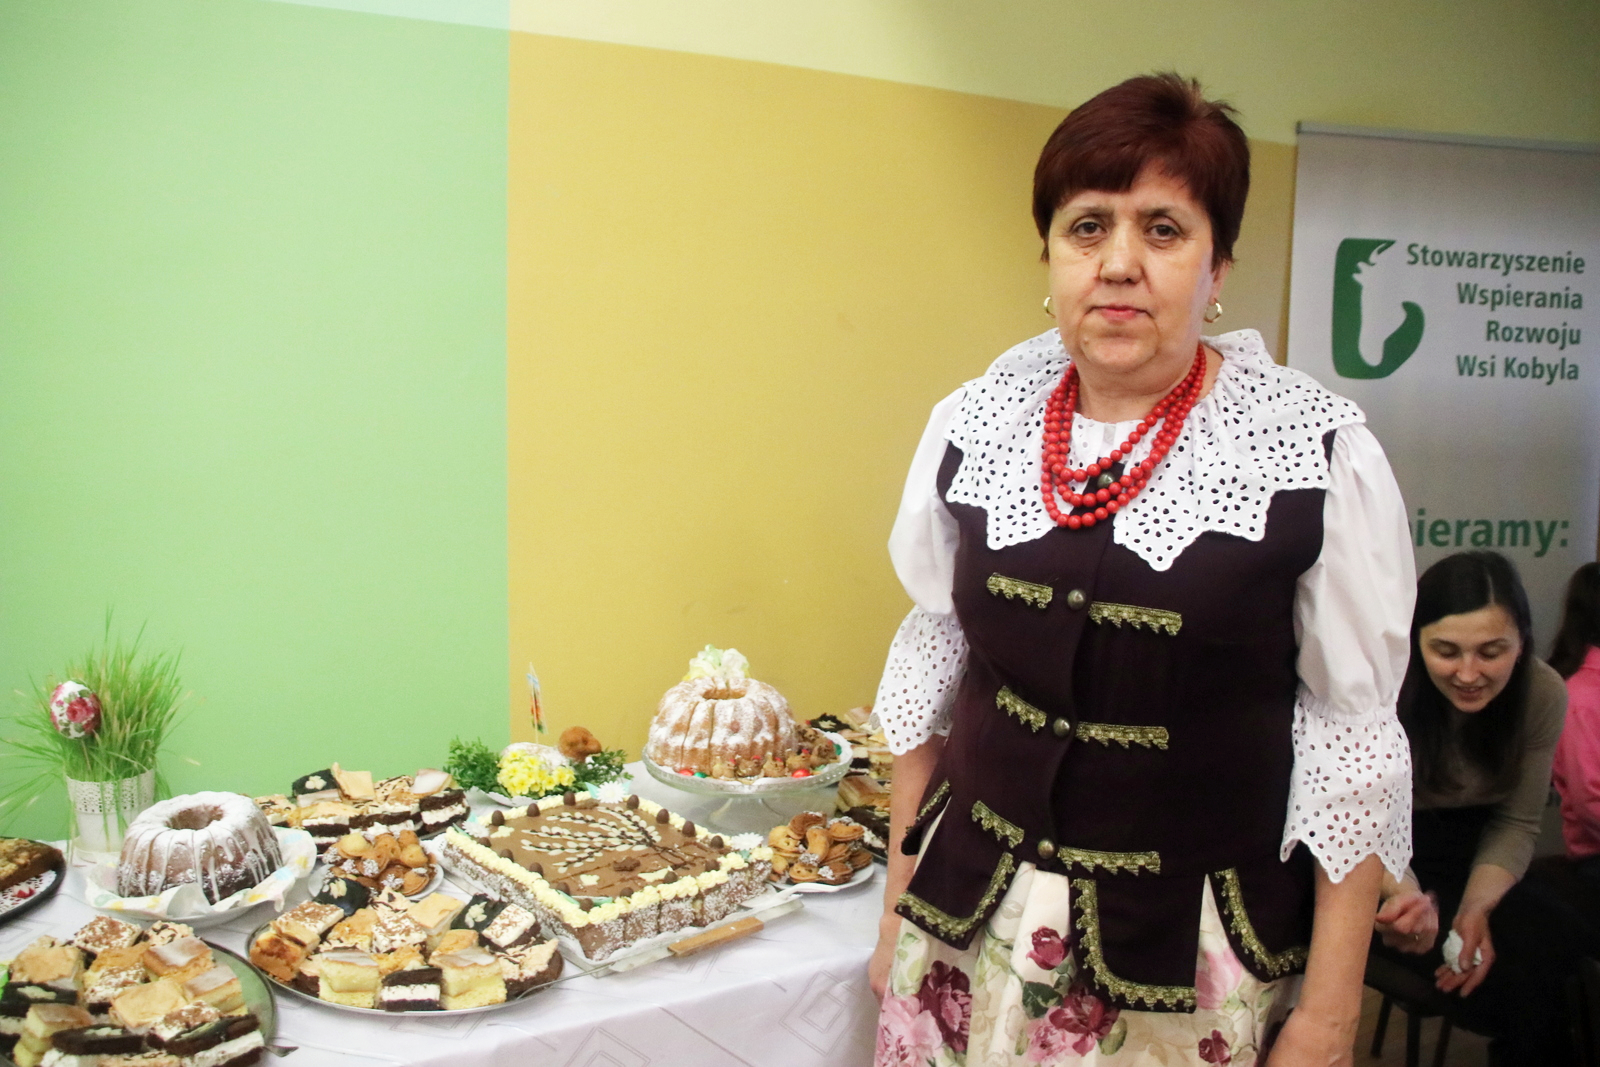 Gospodynie z Rzuchowa upiekły przeróżne wielkanocne słodkości. Pokazała je Maria Kura